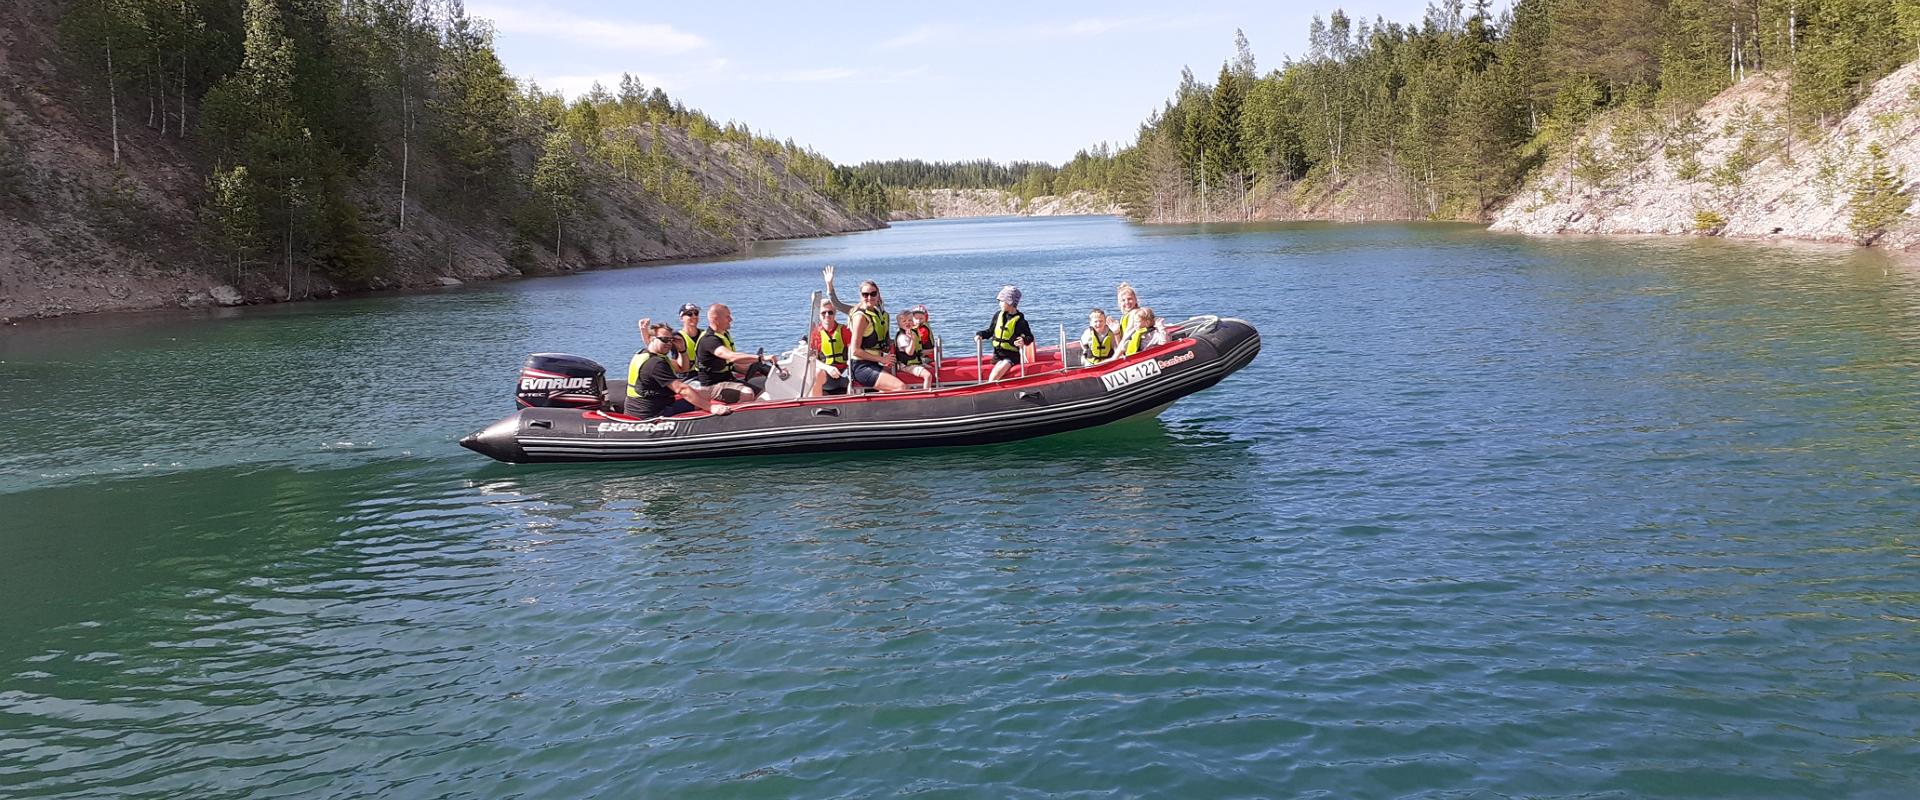 Erfahren Sie ein wirklich tolles Erlebnis, indem Sie an Kanu- oder Rafting-Boot-Ausflügen im einem von Wasser gefülltem Ölschiefertagebau oder auf dem